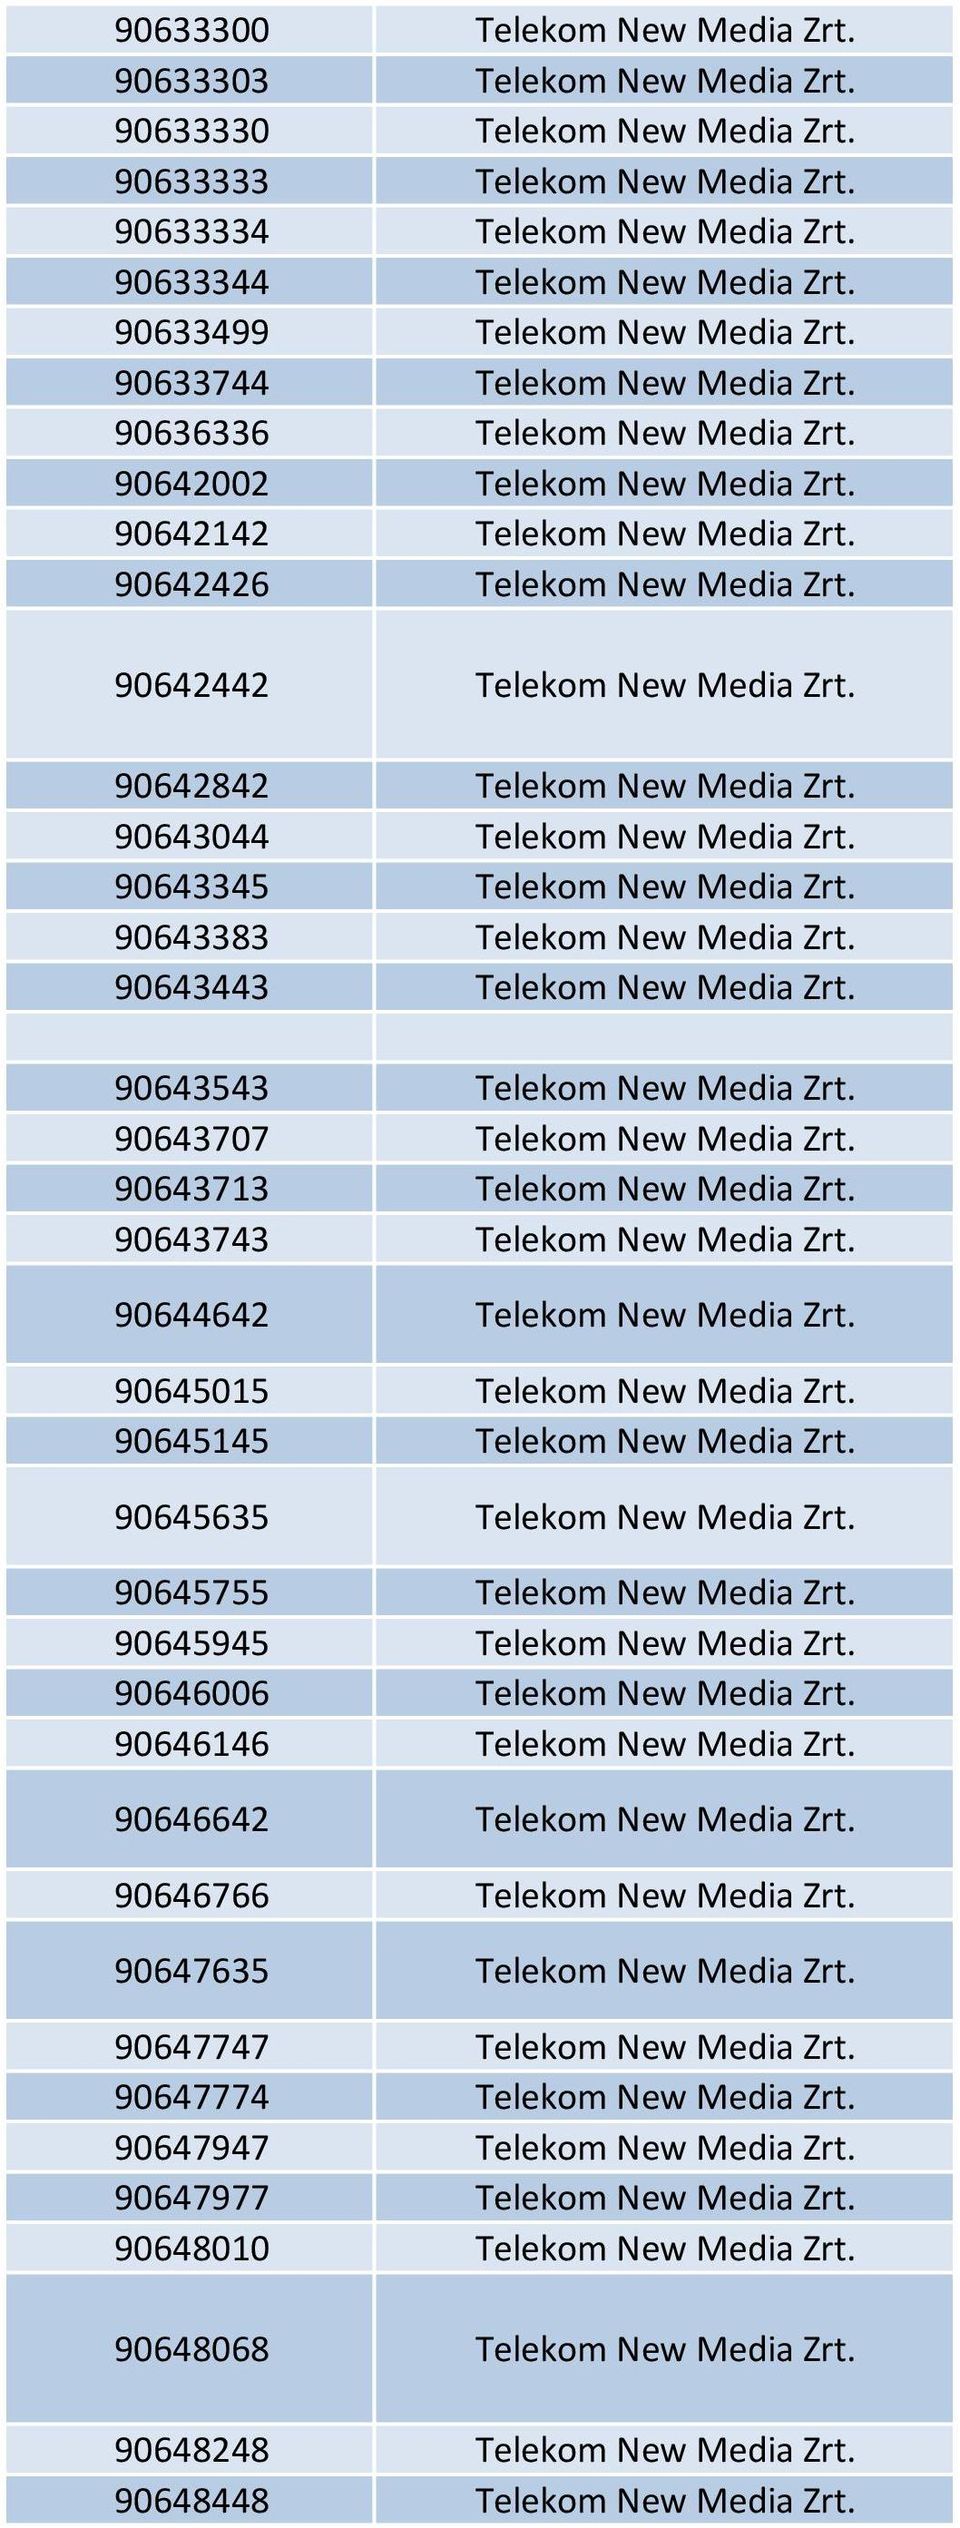 90642442 Telekom New Media Zrt. 90642842 Telekom New Media Zrt. 90643044 Telekom New Media Zrt. 90643345 Telekom New Media Zrt. 90643383 Telekom New Media Zrt. 90643443 Telekom New Media Zrt.